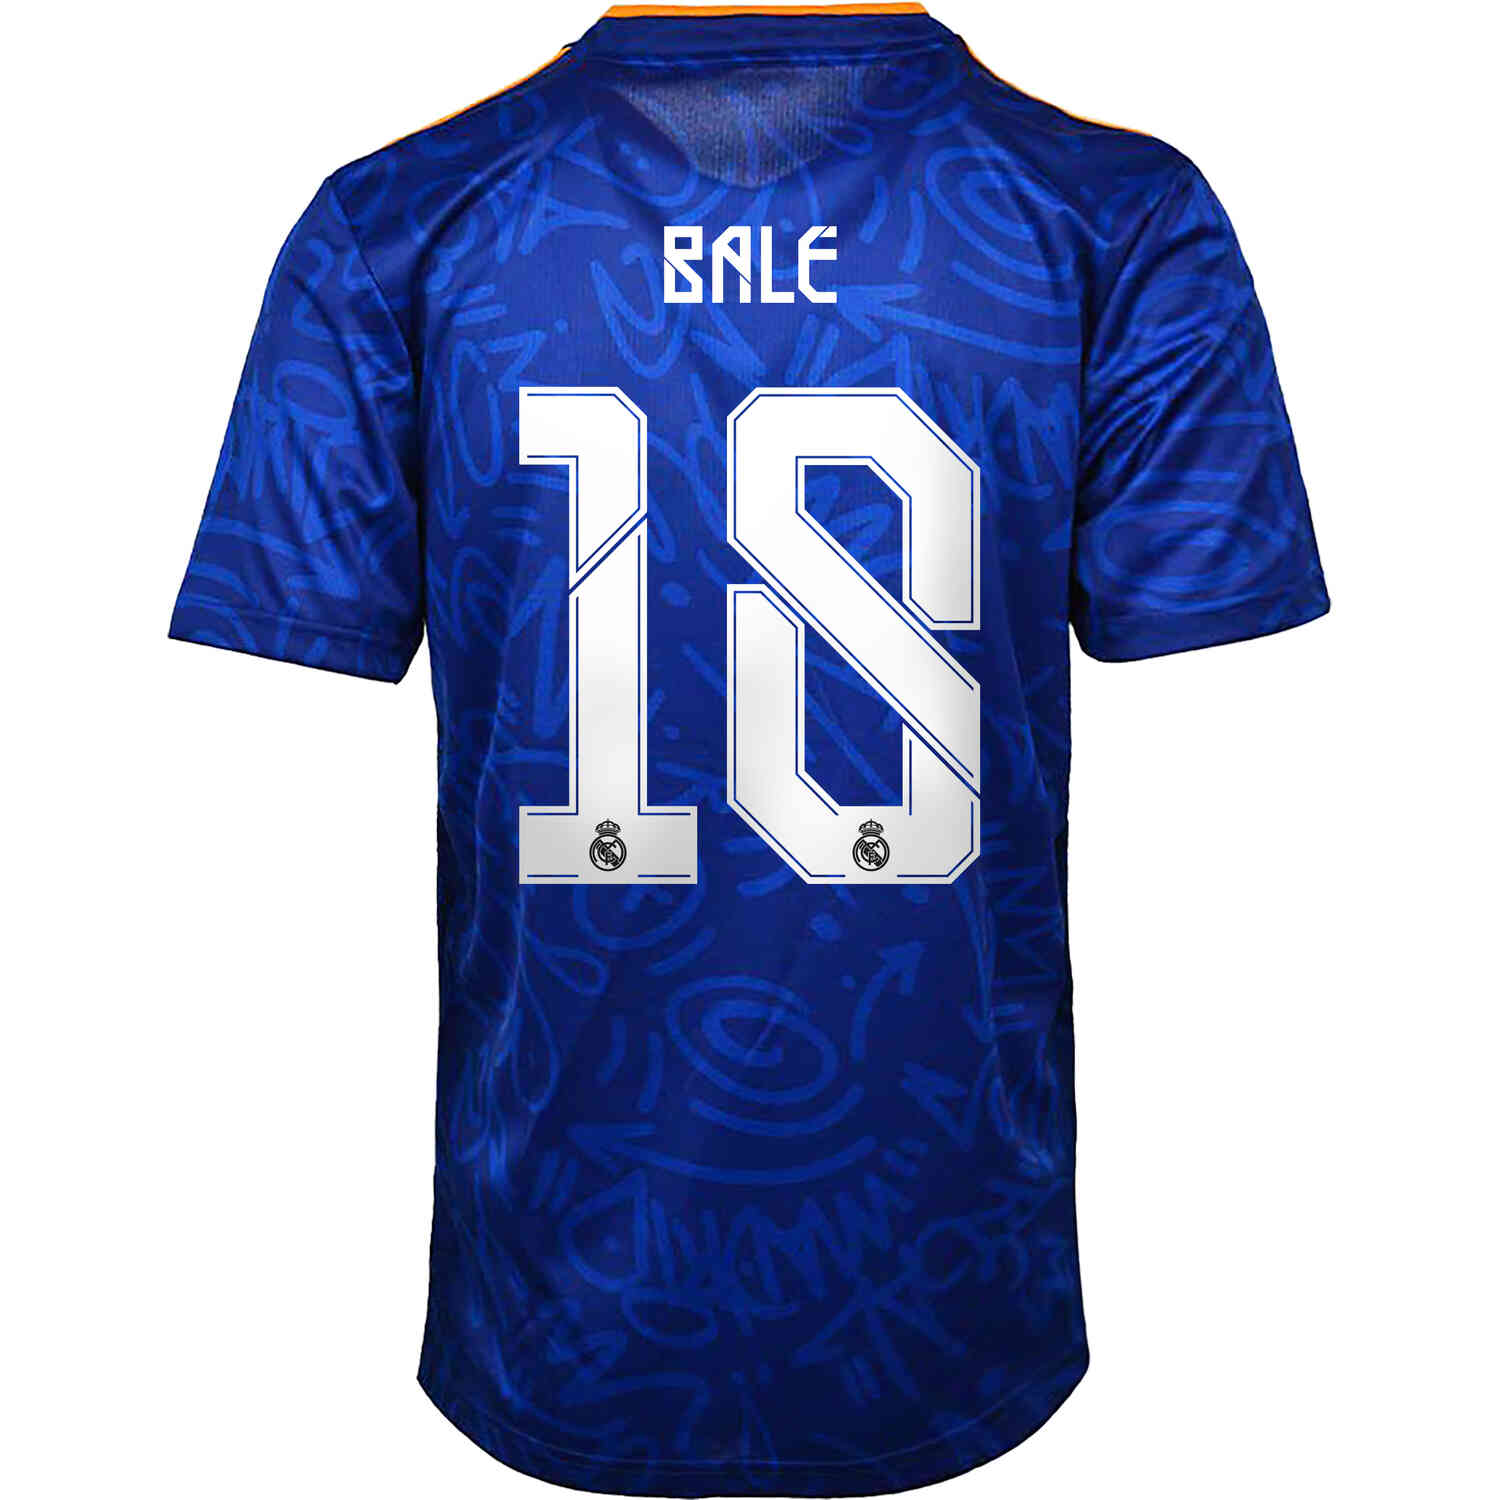 2021/22 Kids adidas Gareth Bale Real Madrid Away Jersey - SoccerPro